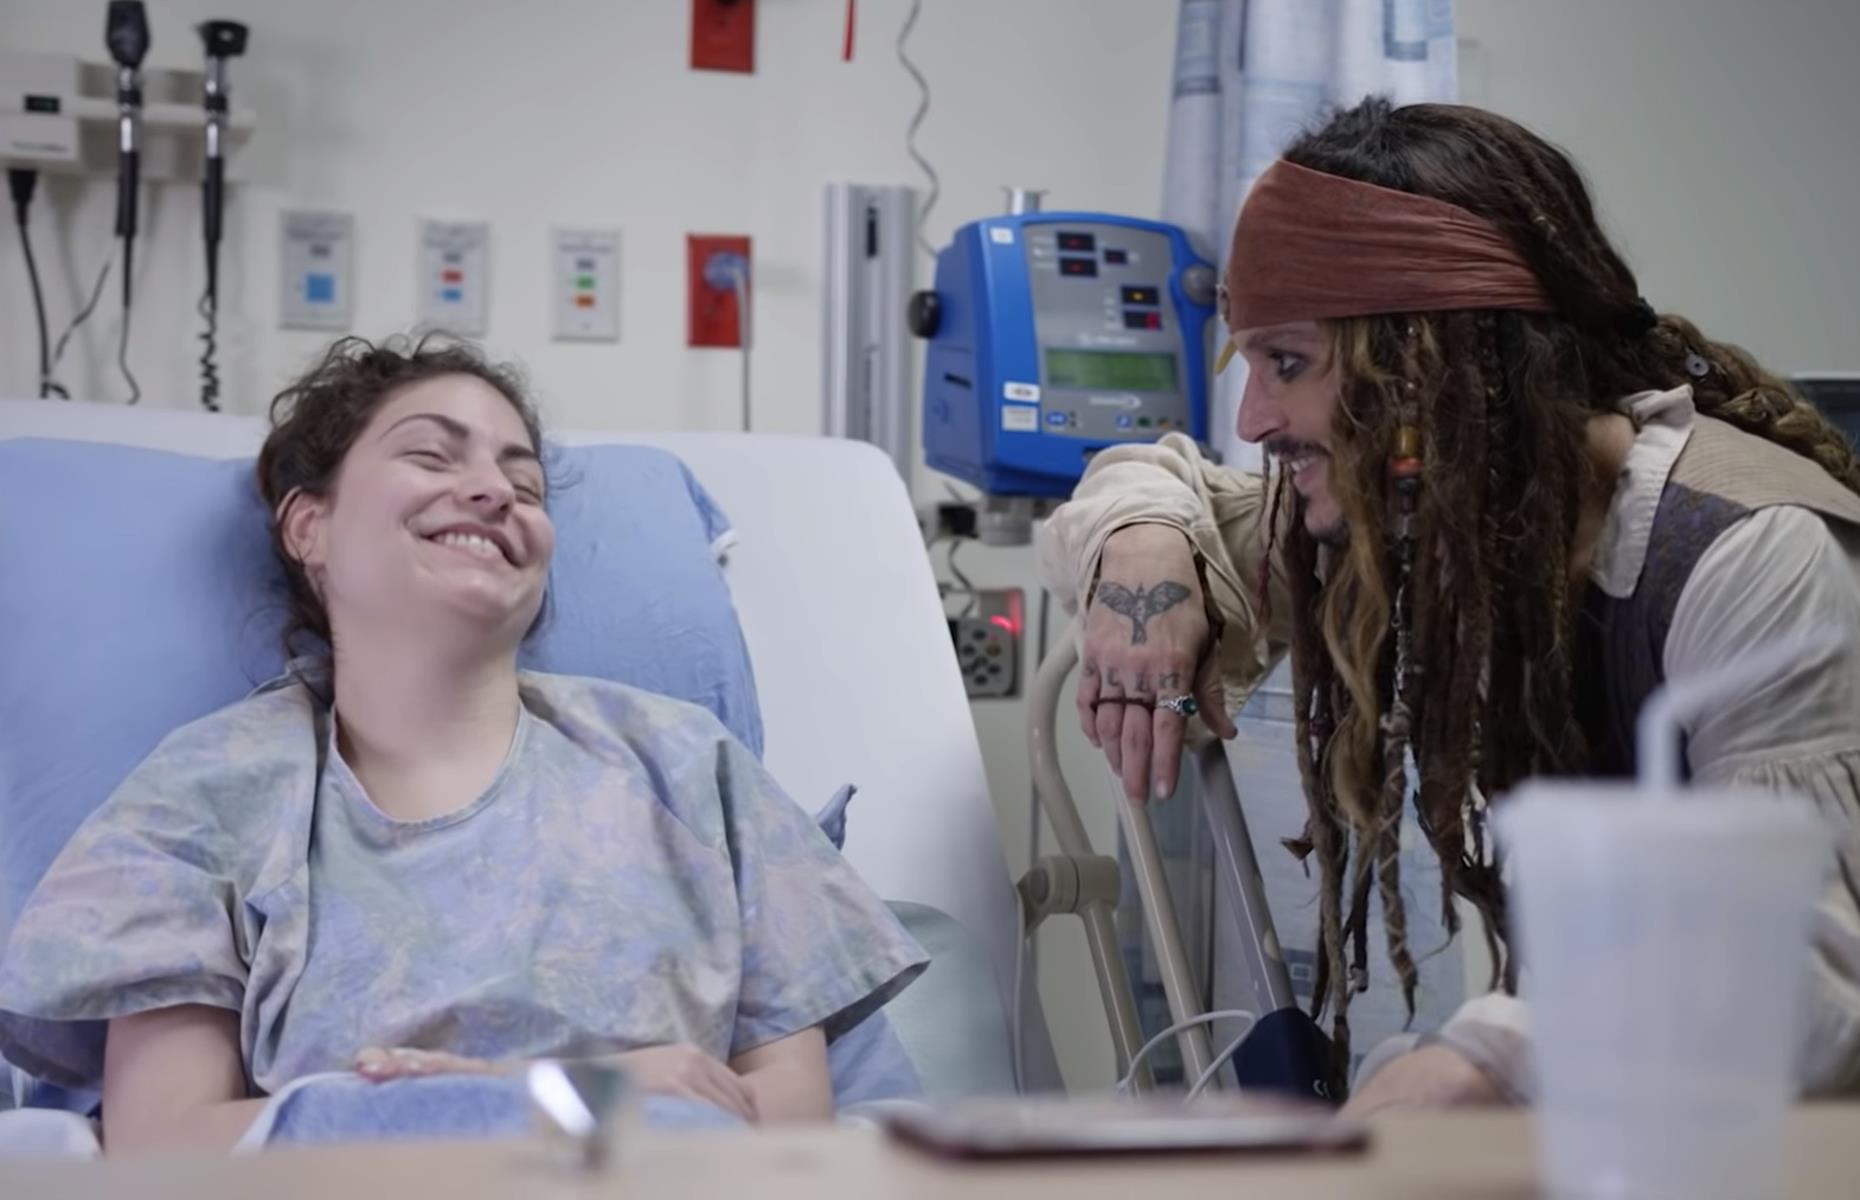 Johnny Depp visits kids in hospital